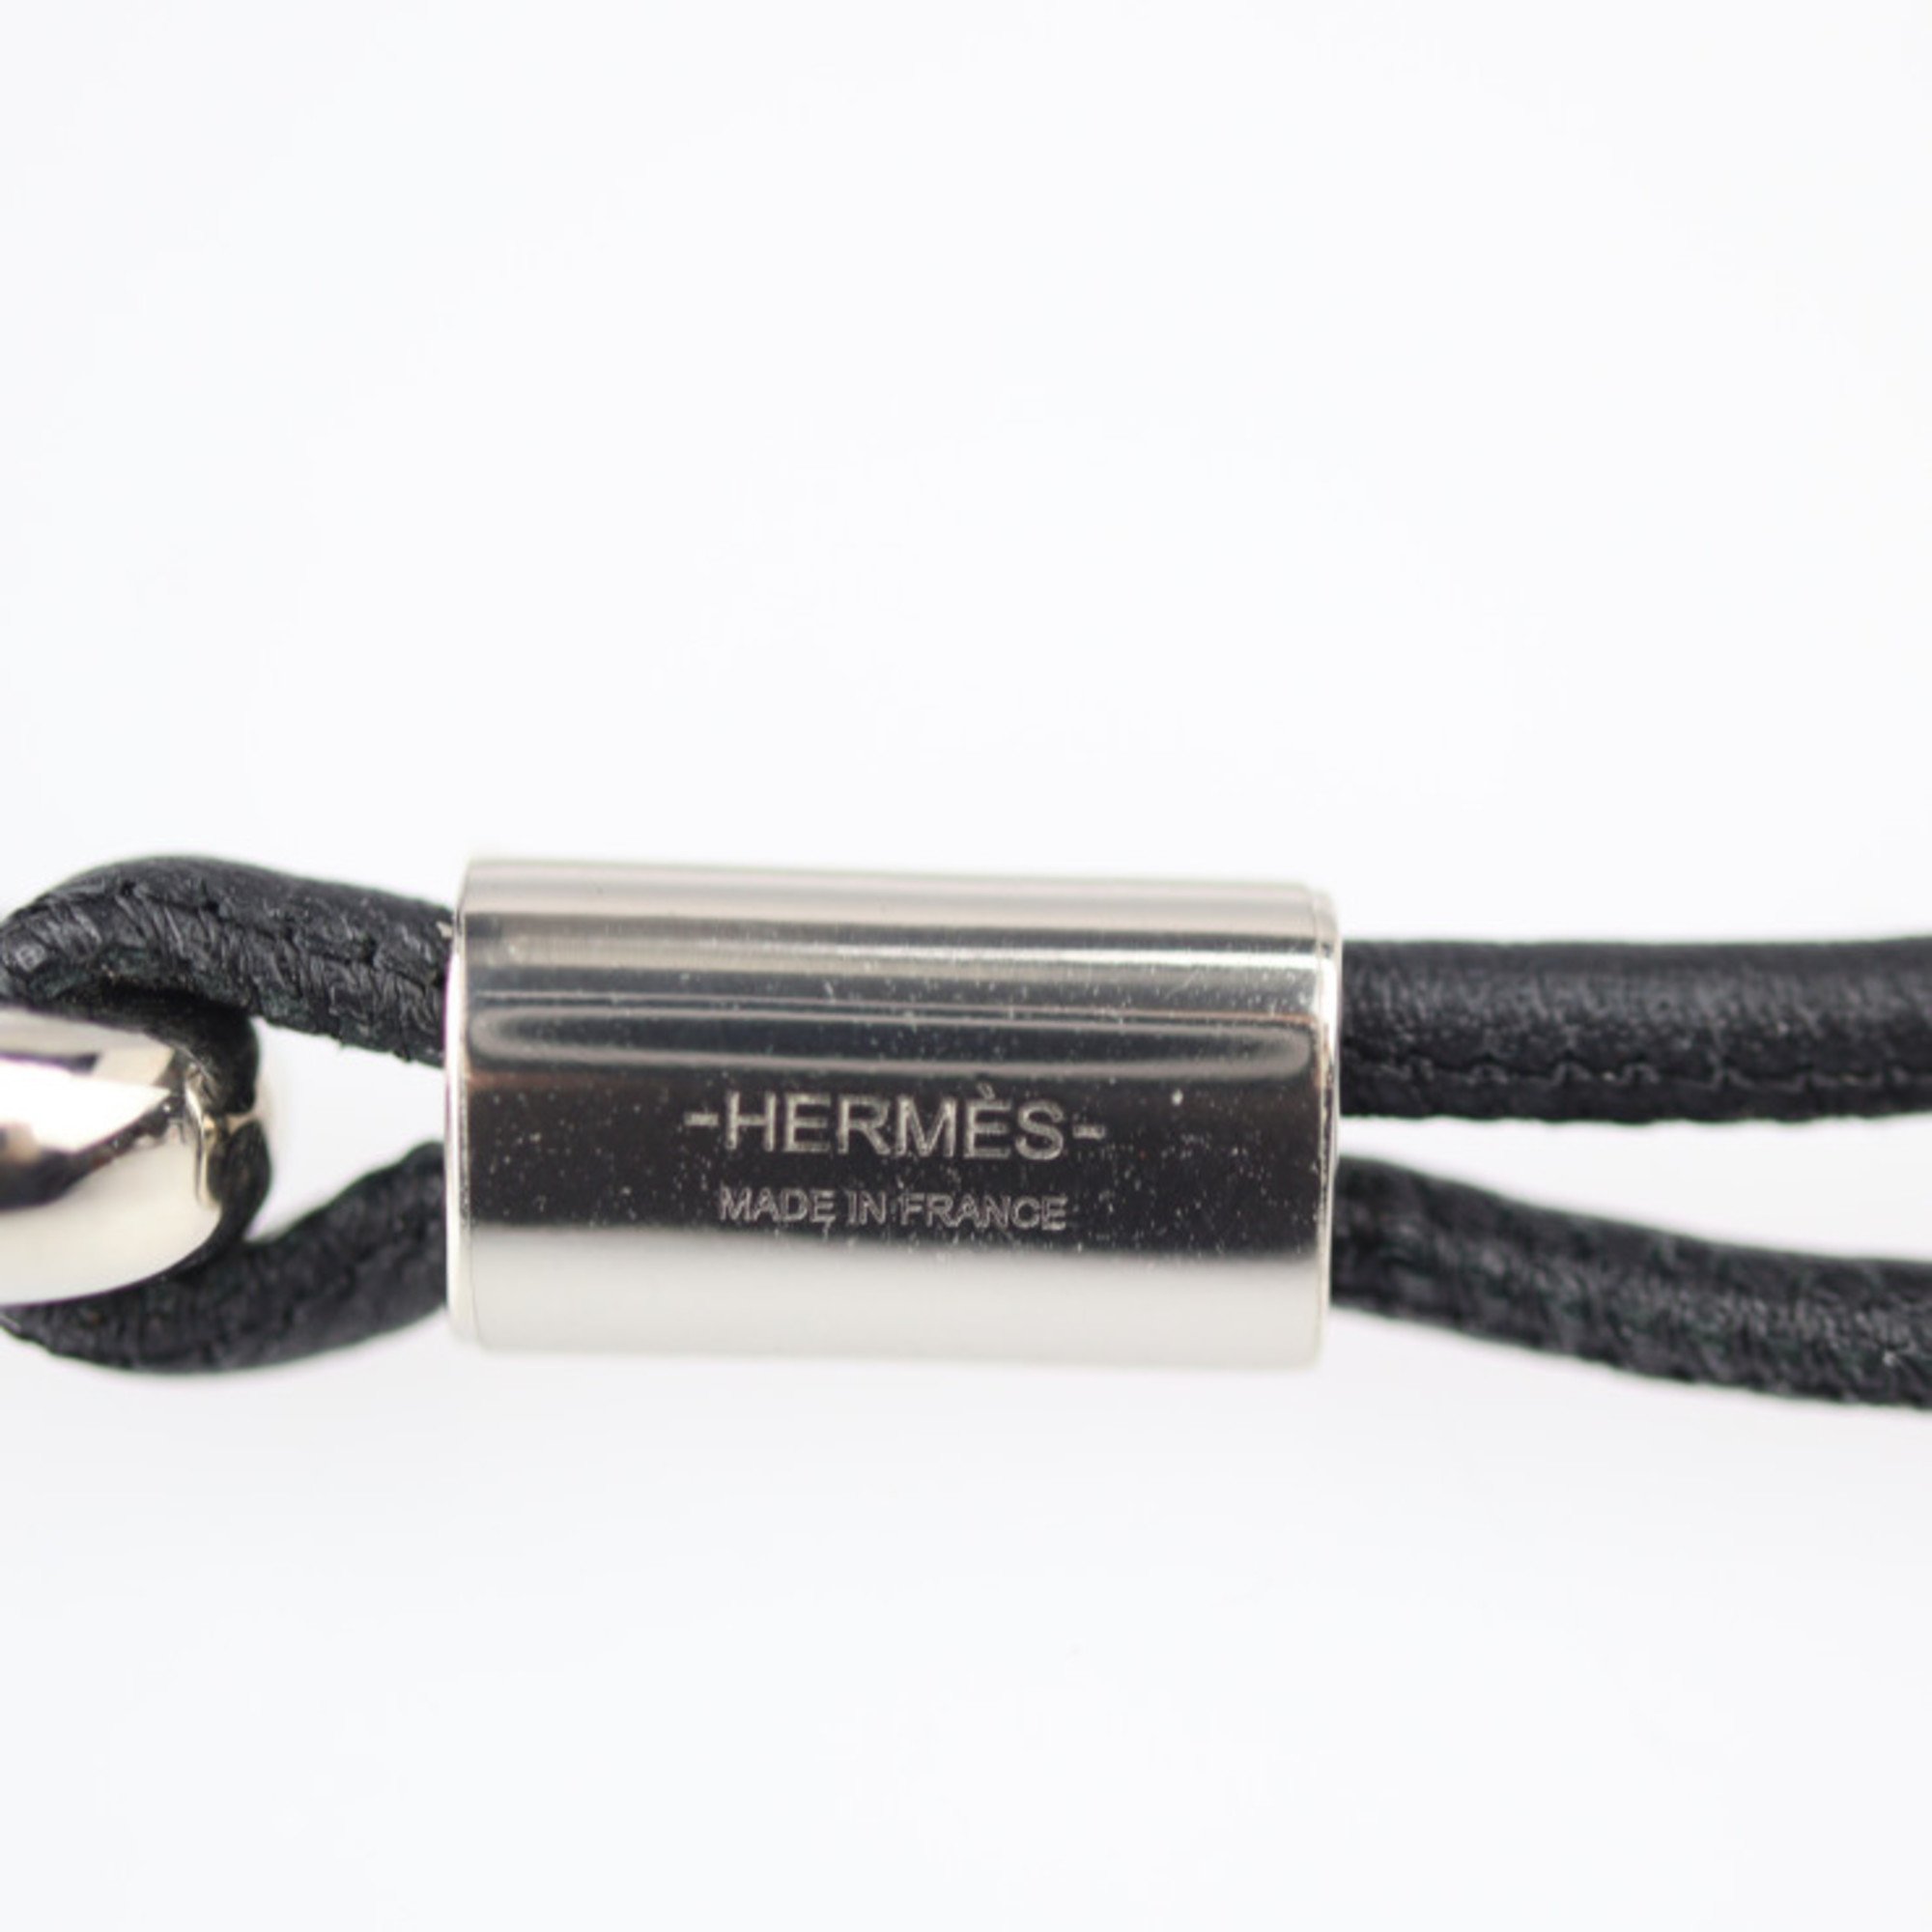 HERMES Hermes RHAPSODY Rhapsody Necklace Buffalo Horn Vaux Swift Brown Series Black Silver Hardware